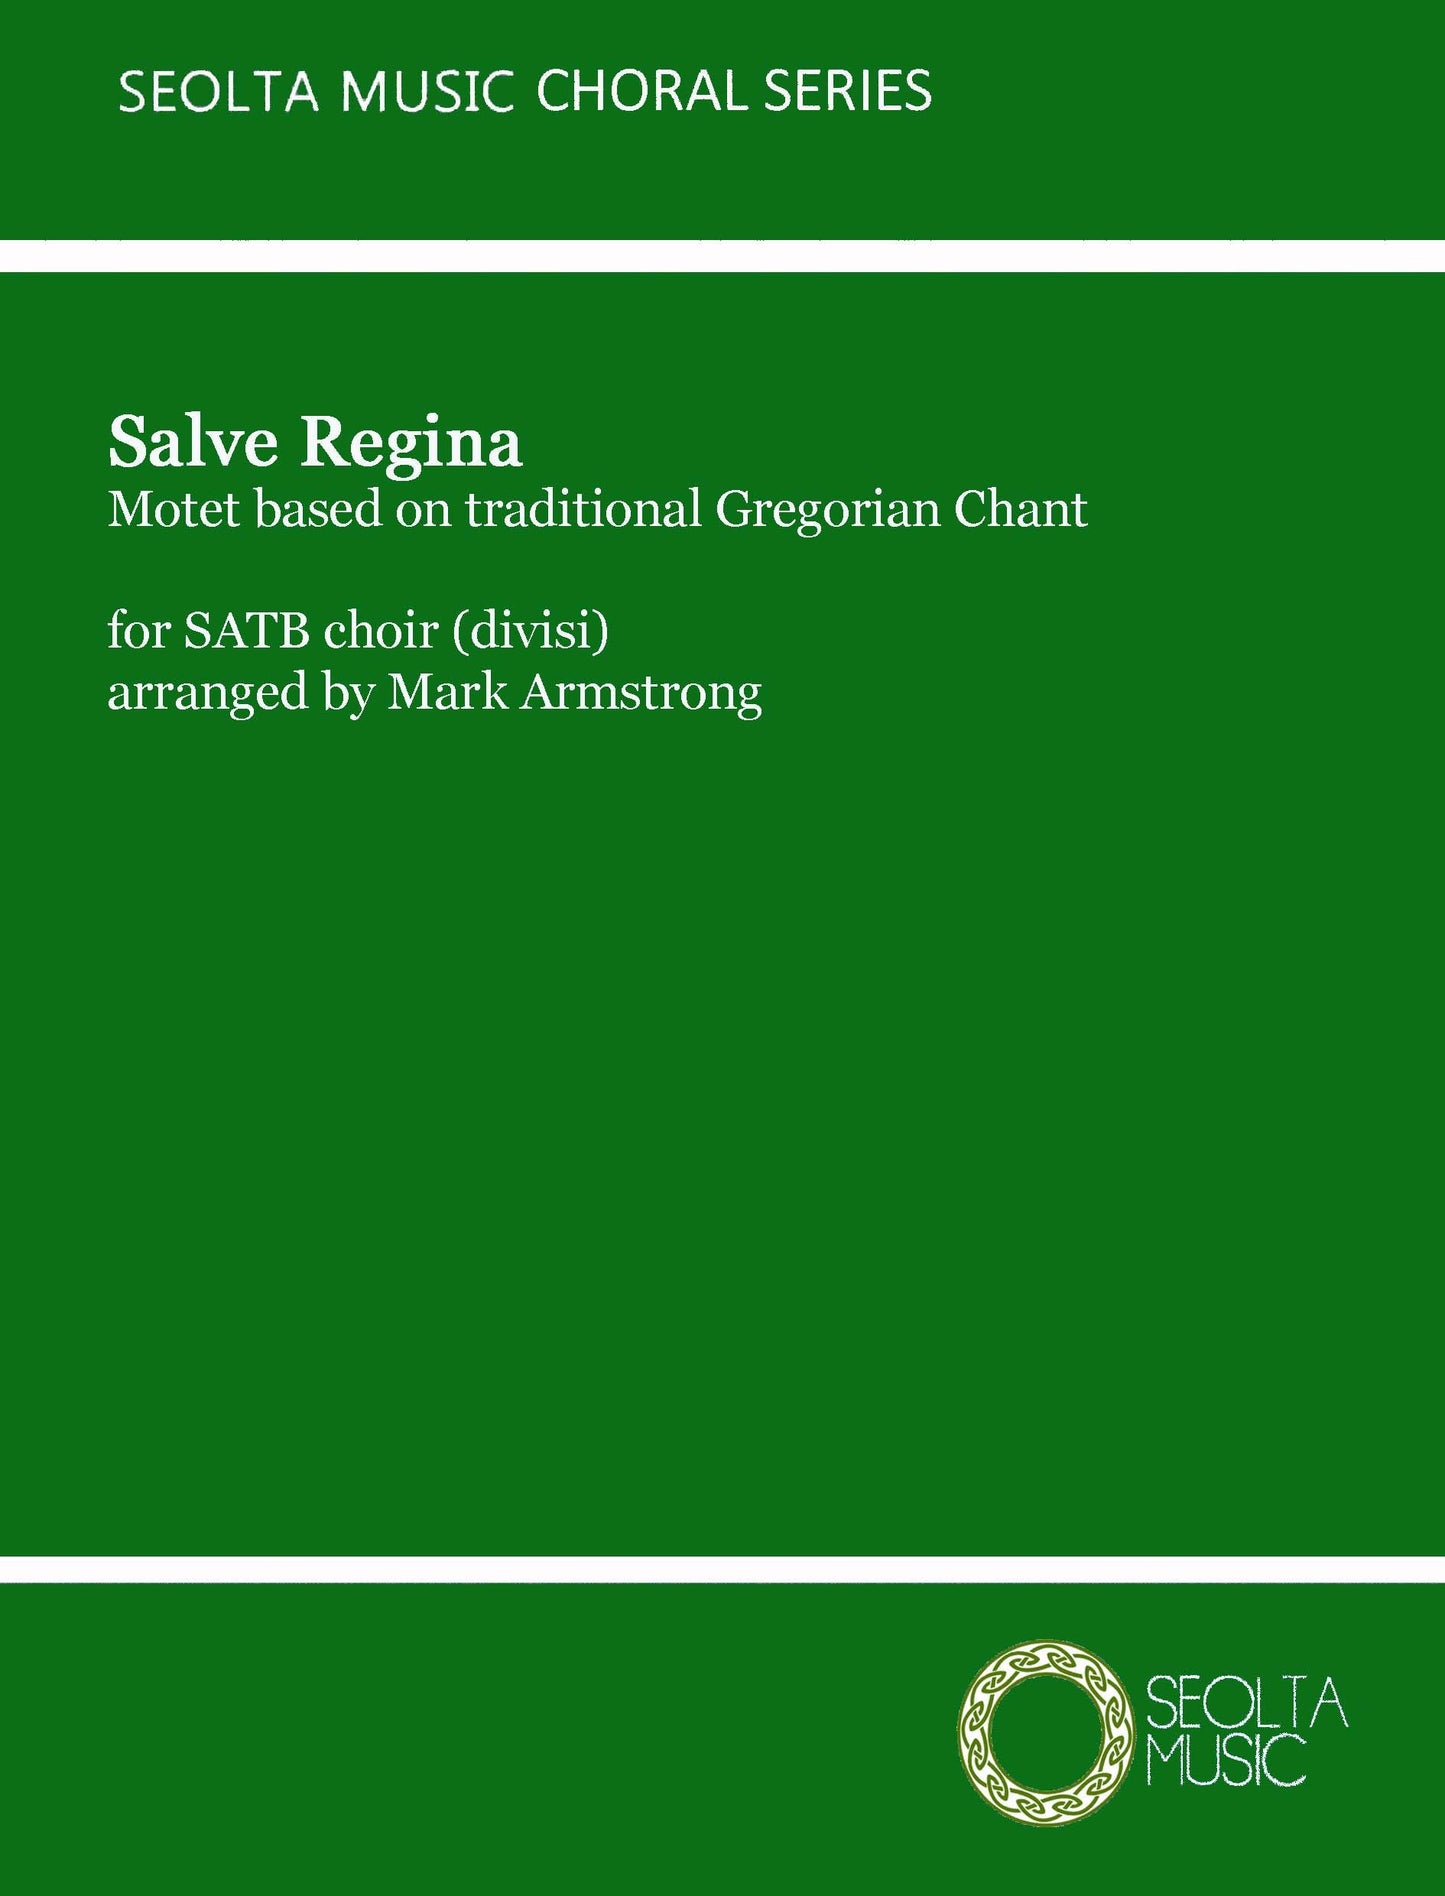 four-motets-on-gregorian-themes-salve-regina-sheet-music